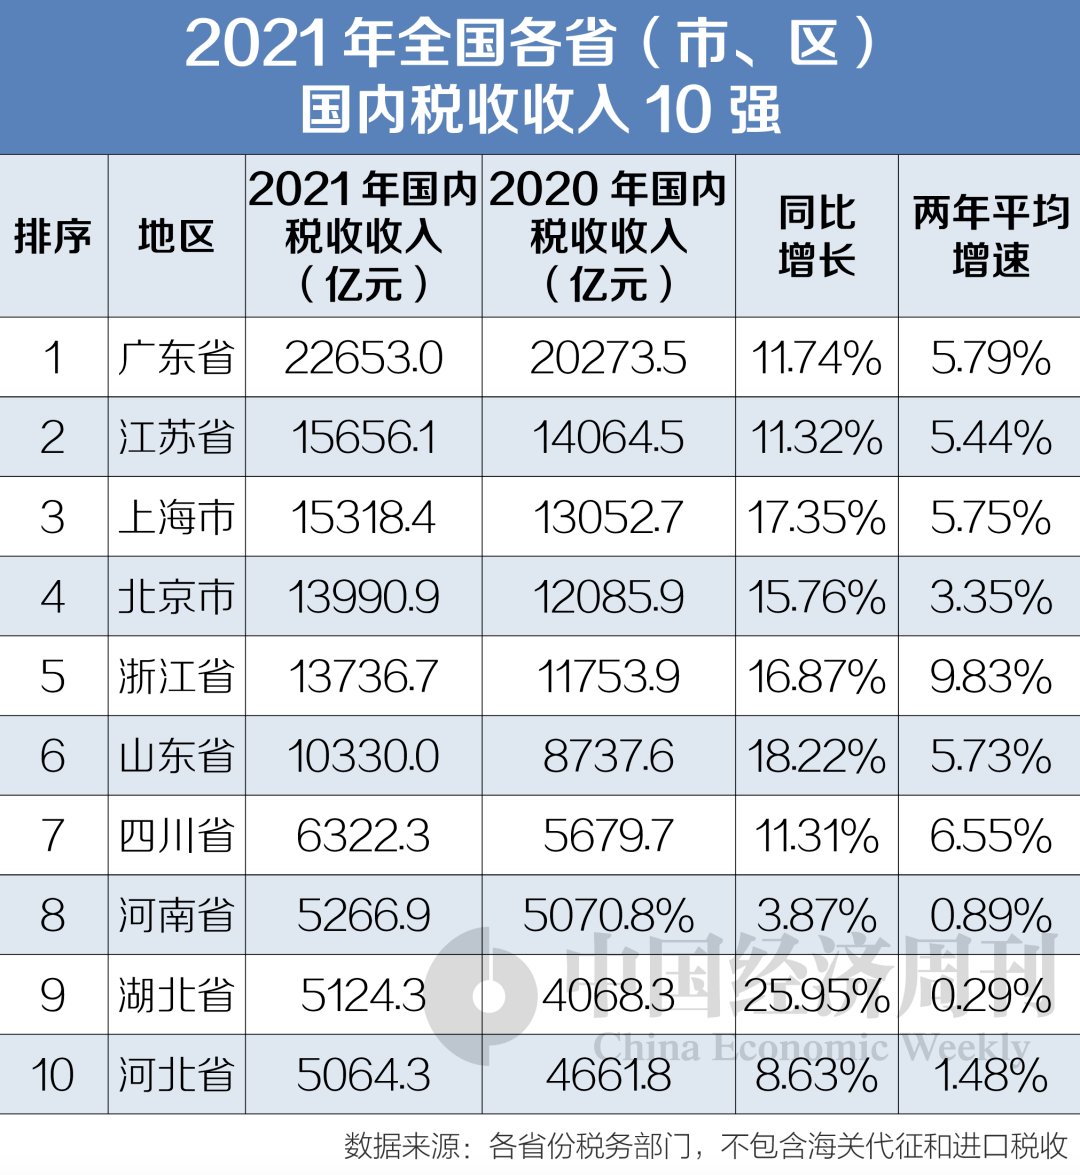 江苏省税收收入排名,1分钟前更新